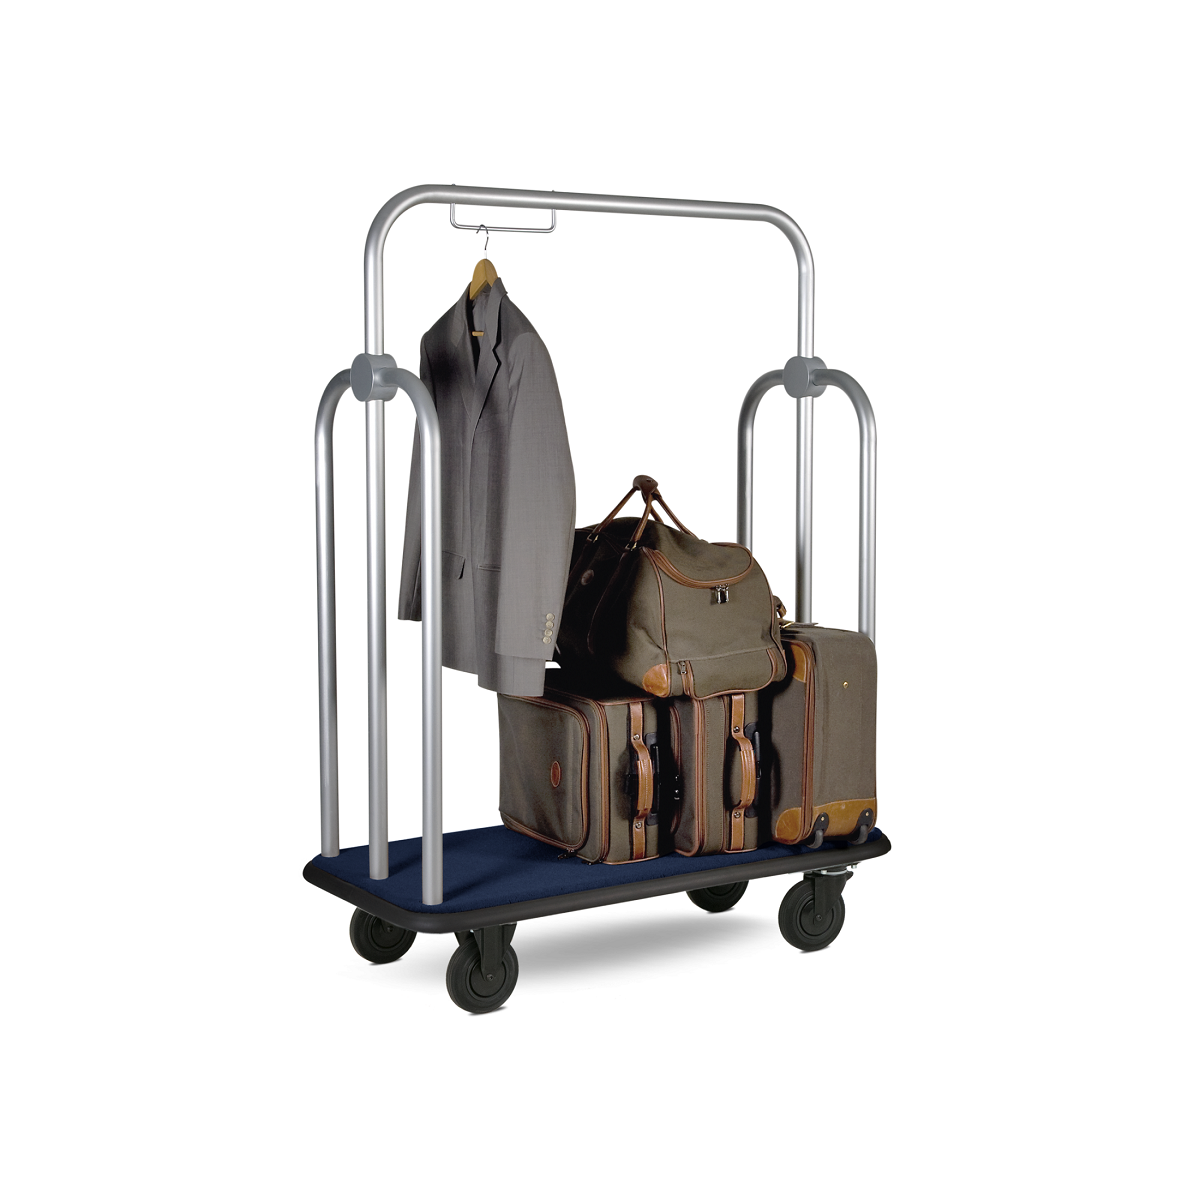 Luggage trolley Ascolia Vesuvio 750, 900 and 1100